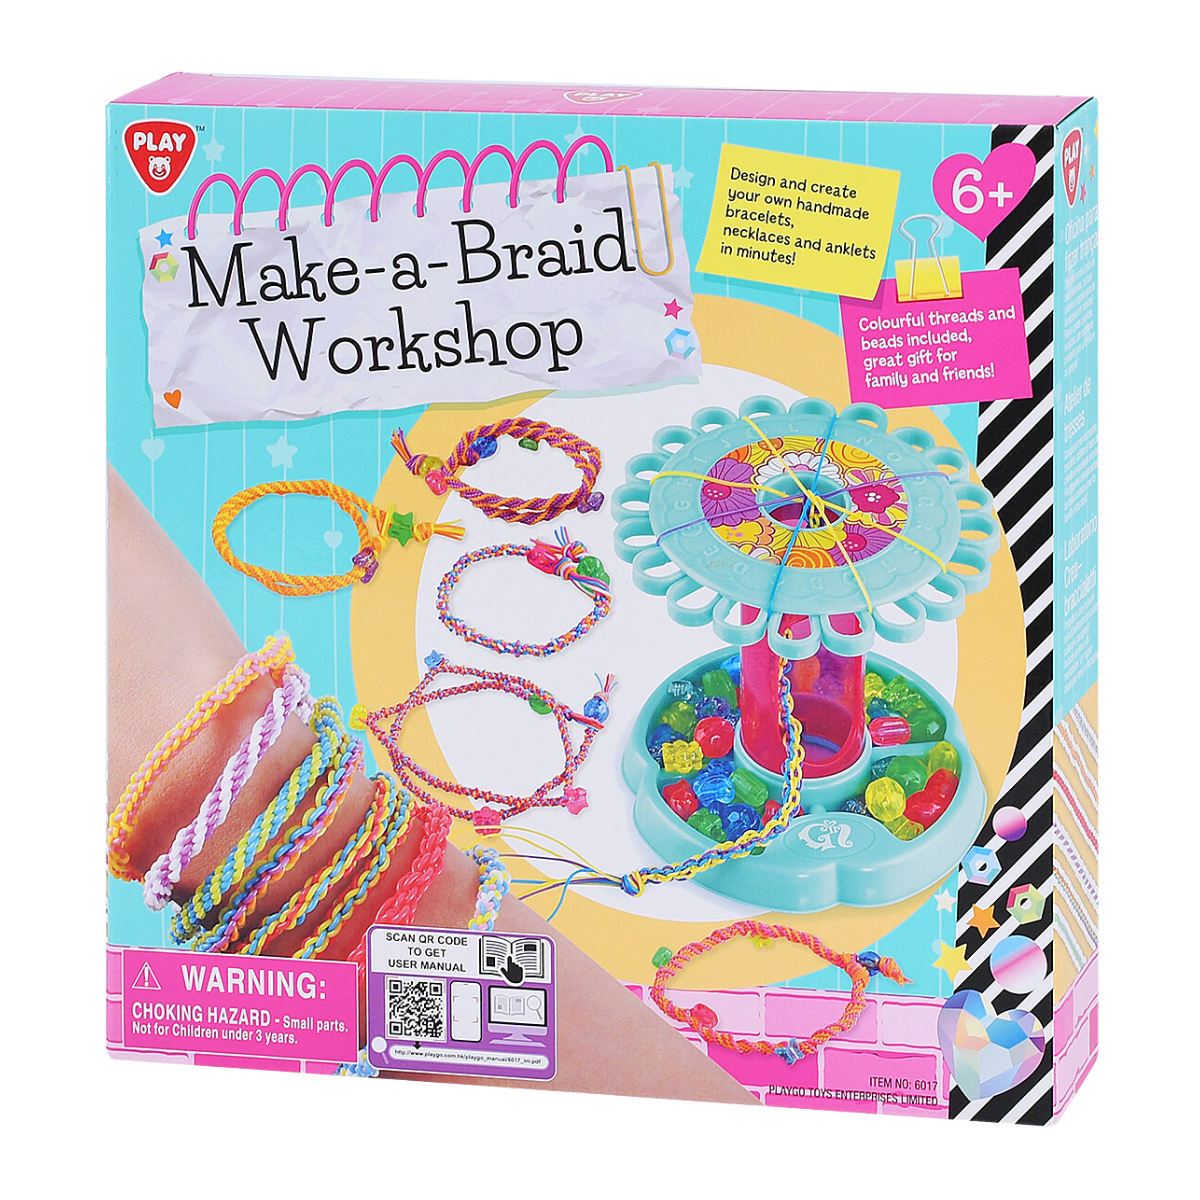 Make a Braid Workshop